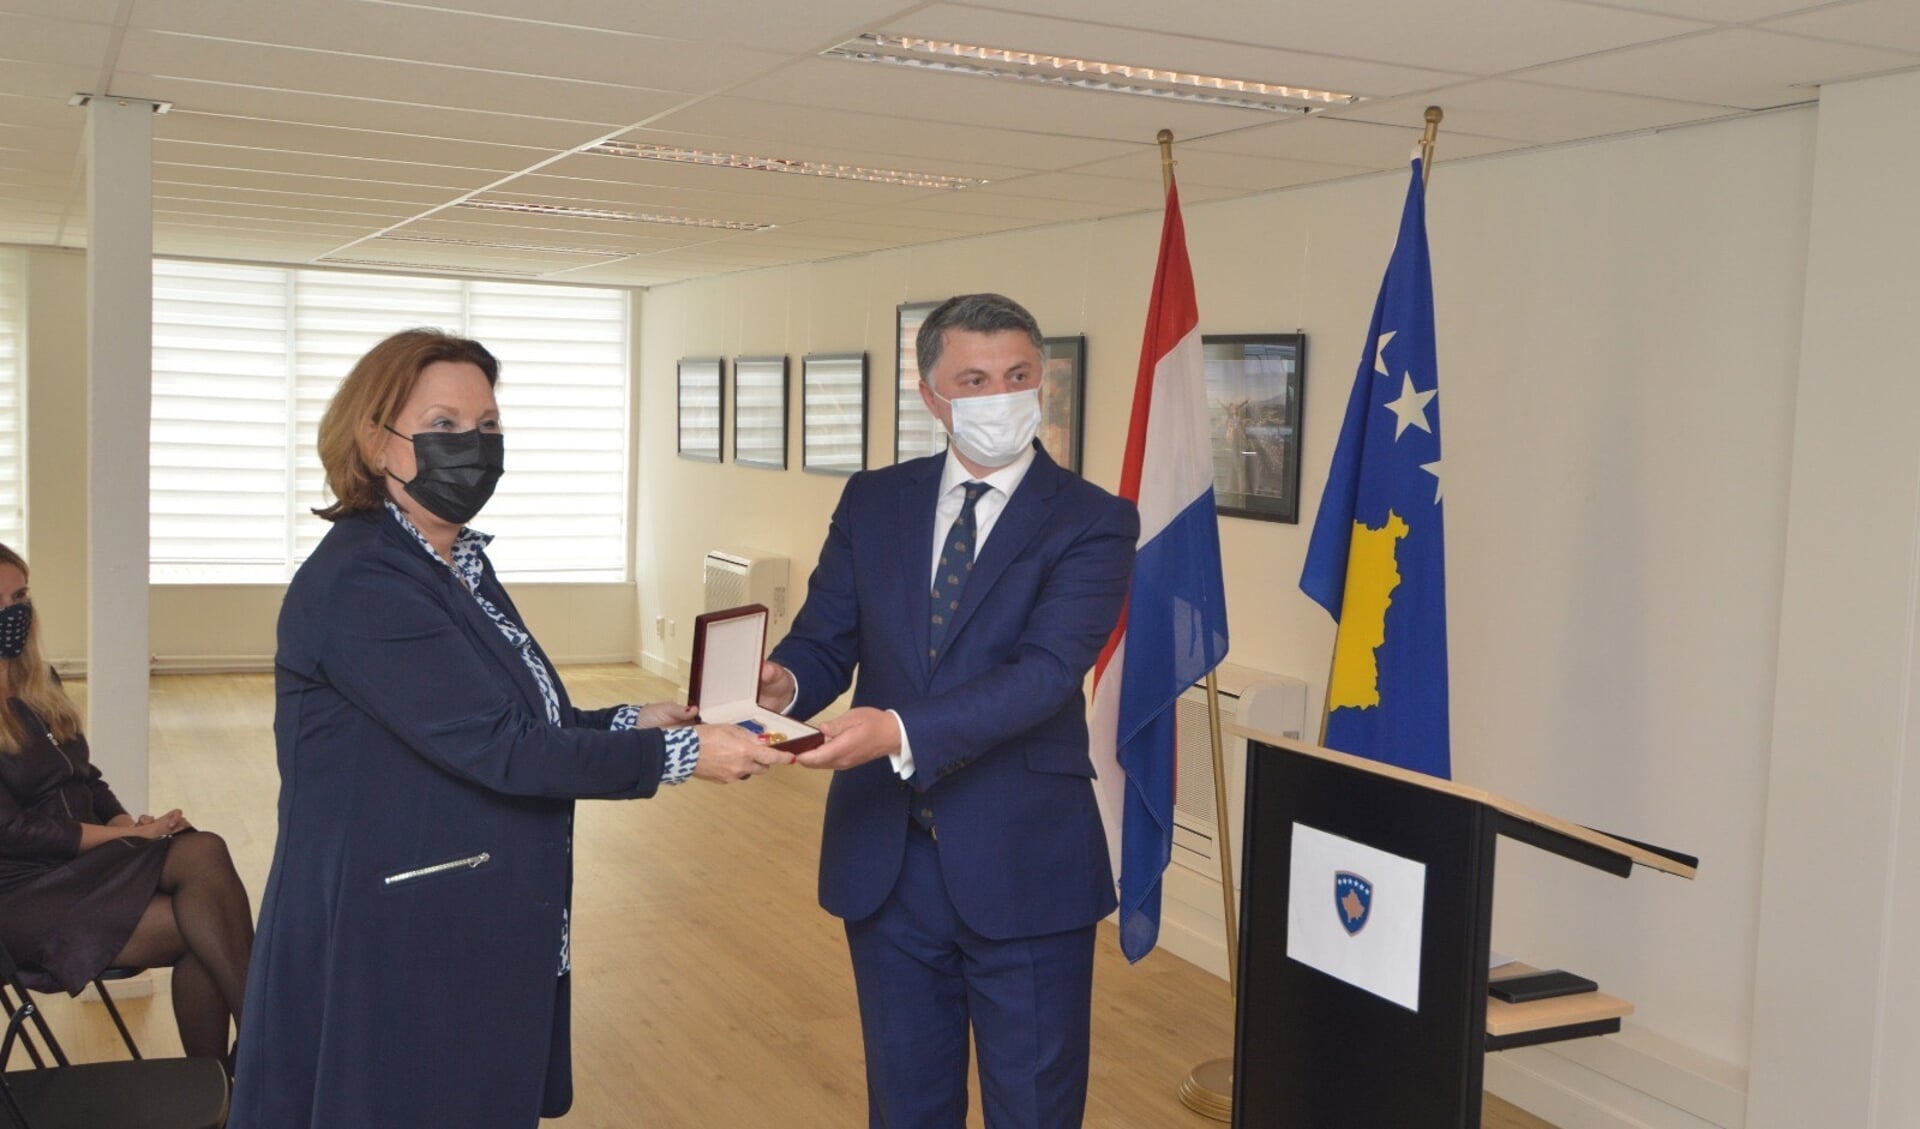 Anke Gerrits ontving de Kosovaarse presidentiële medaille ‘Moeder Teresa’ uit handen van de Kosovaarse ambassadeur voor haar bijdrage op het gebied van humanitaire activiteiten.